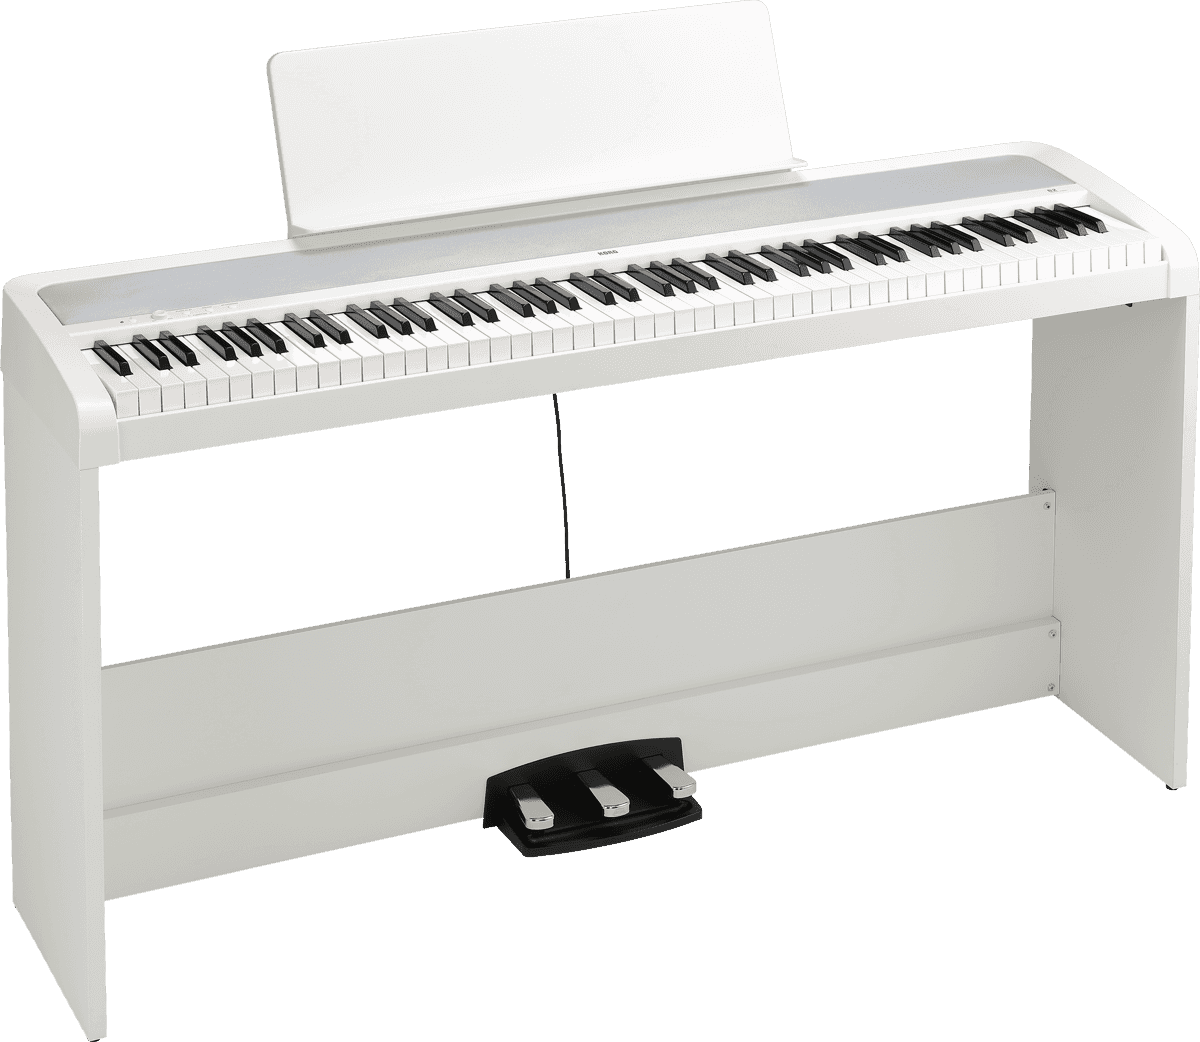 PIANO NUMERIQUE MEUBLE CASIO AP-270 WH